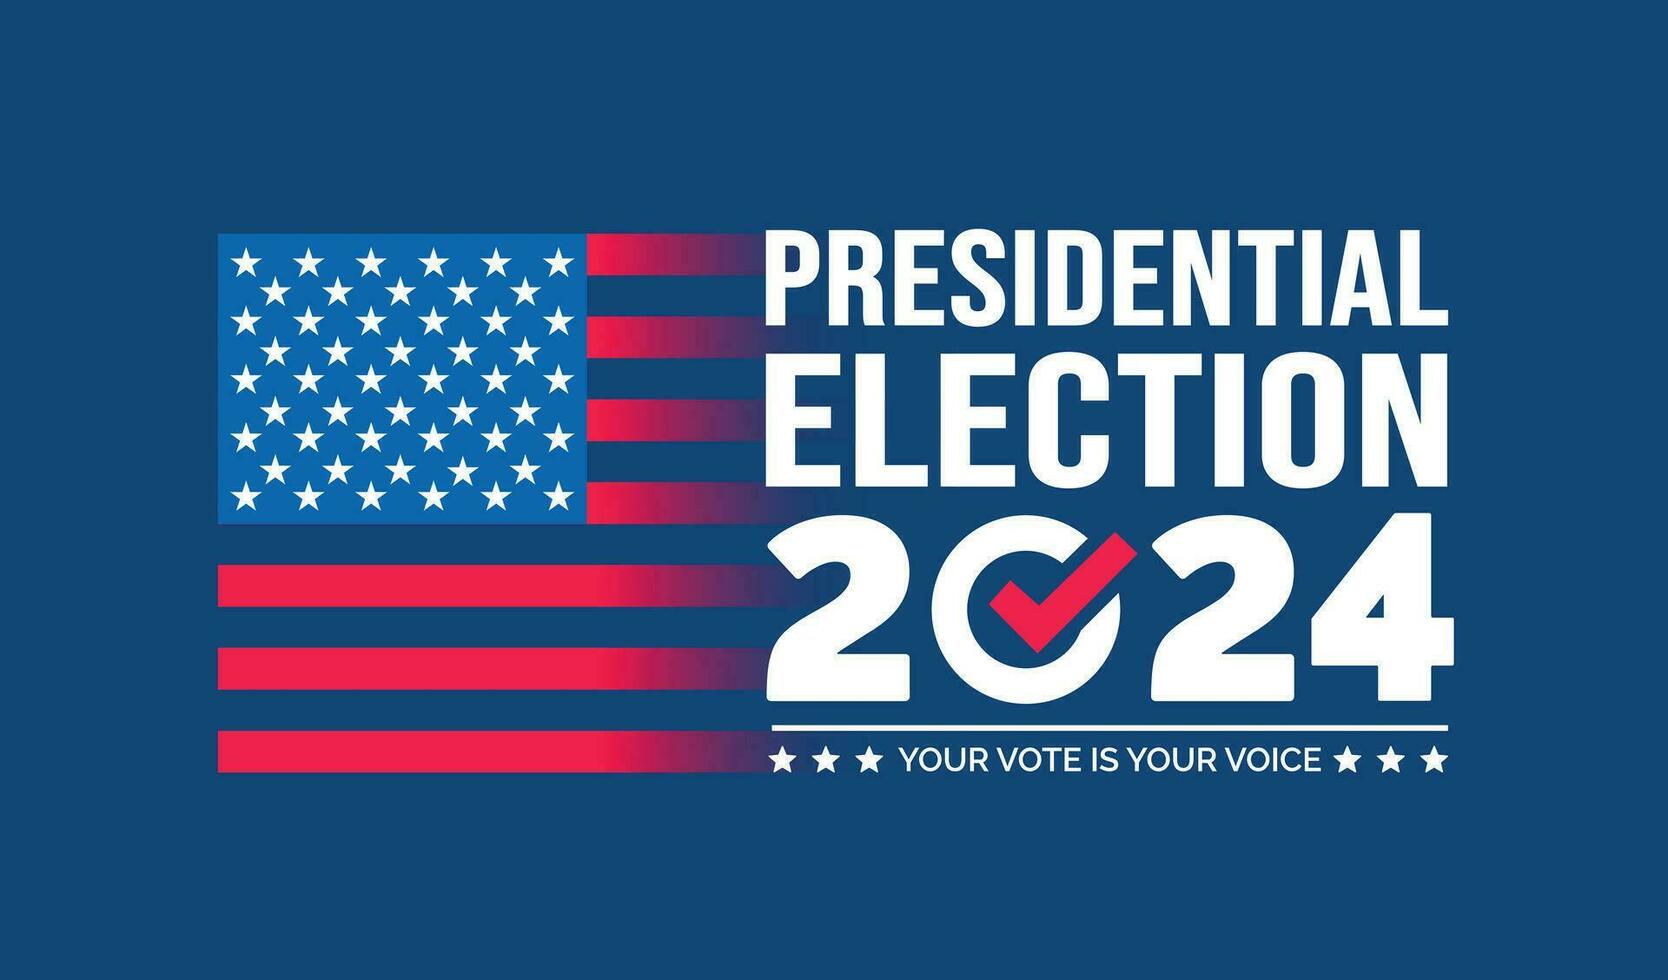 Verenigde Staten van Amerika 2024 presidentieel verkiezingen evenement banier, achtergrond, kaart, poster ontwerp. presidentieel verkiezingen 2024 banier met Amerikaans kleuren ontwerp en typografie. stemmen dag, november 5. ons verkiezing. vector